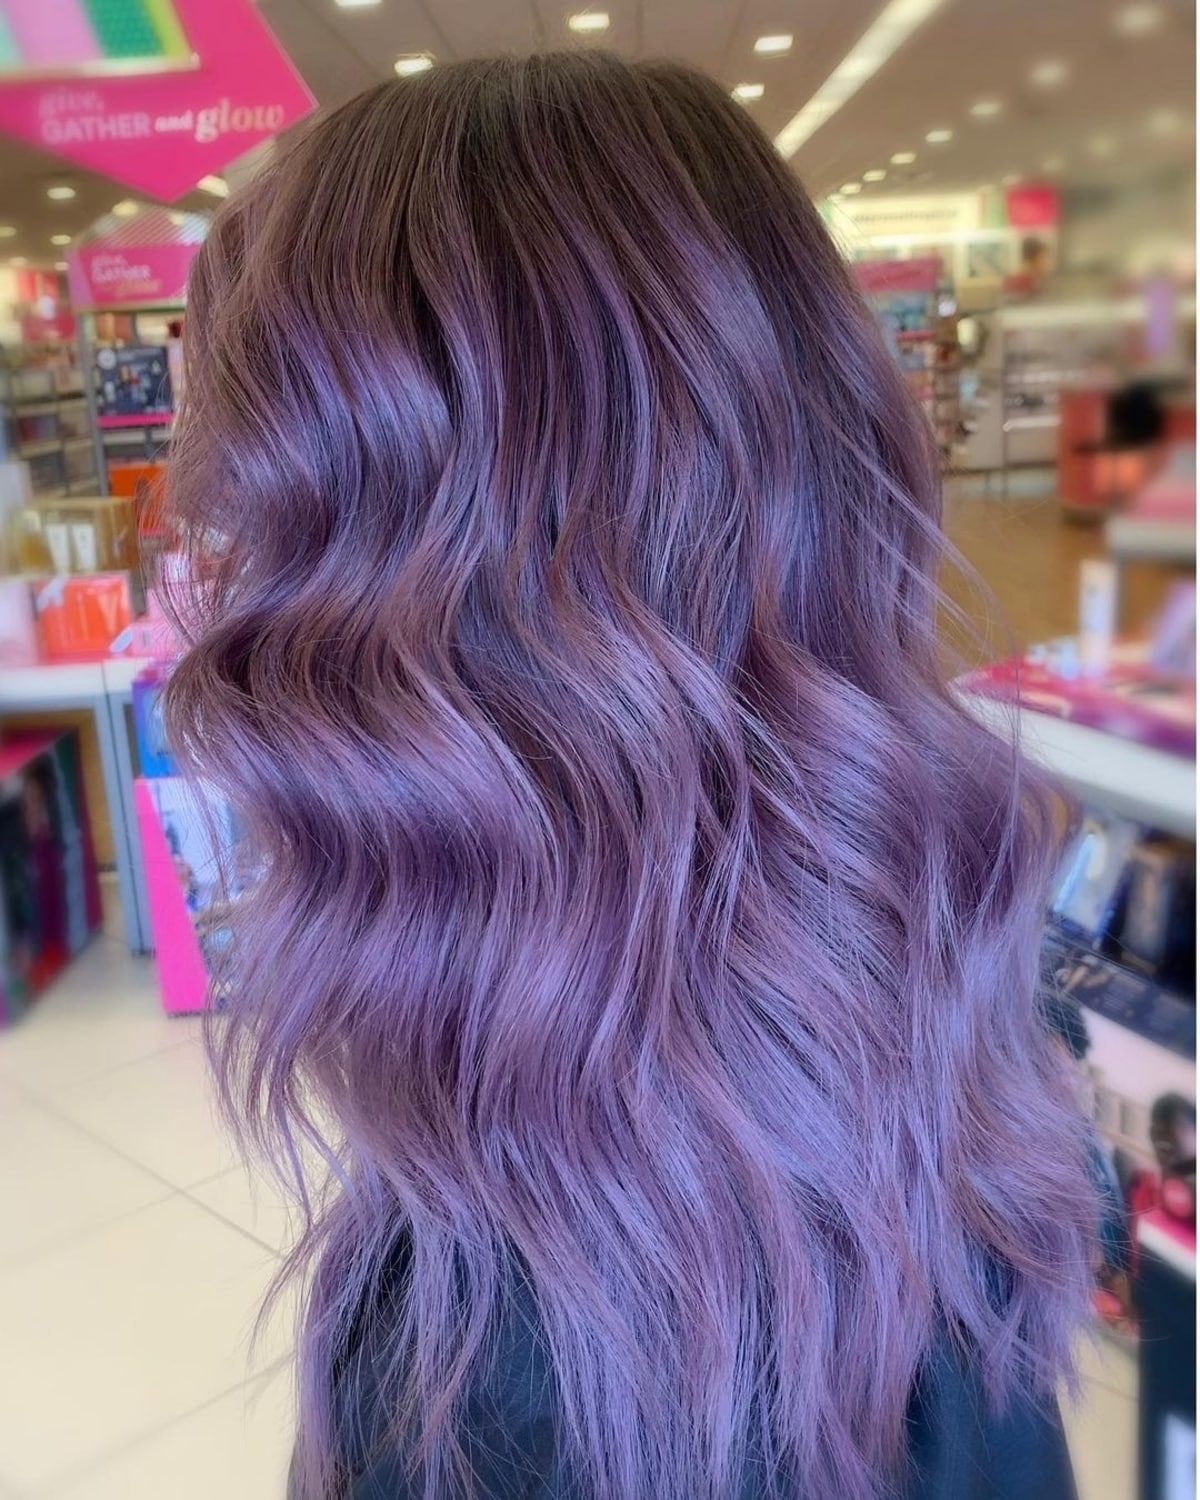 Mermaid hair-inspired lavender waves